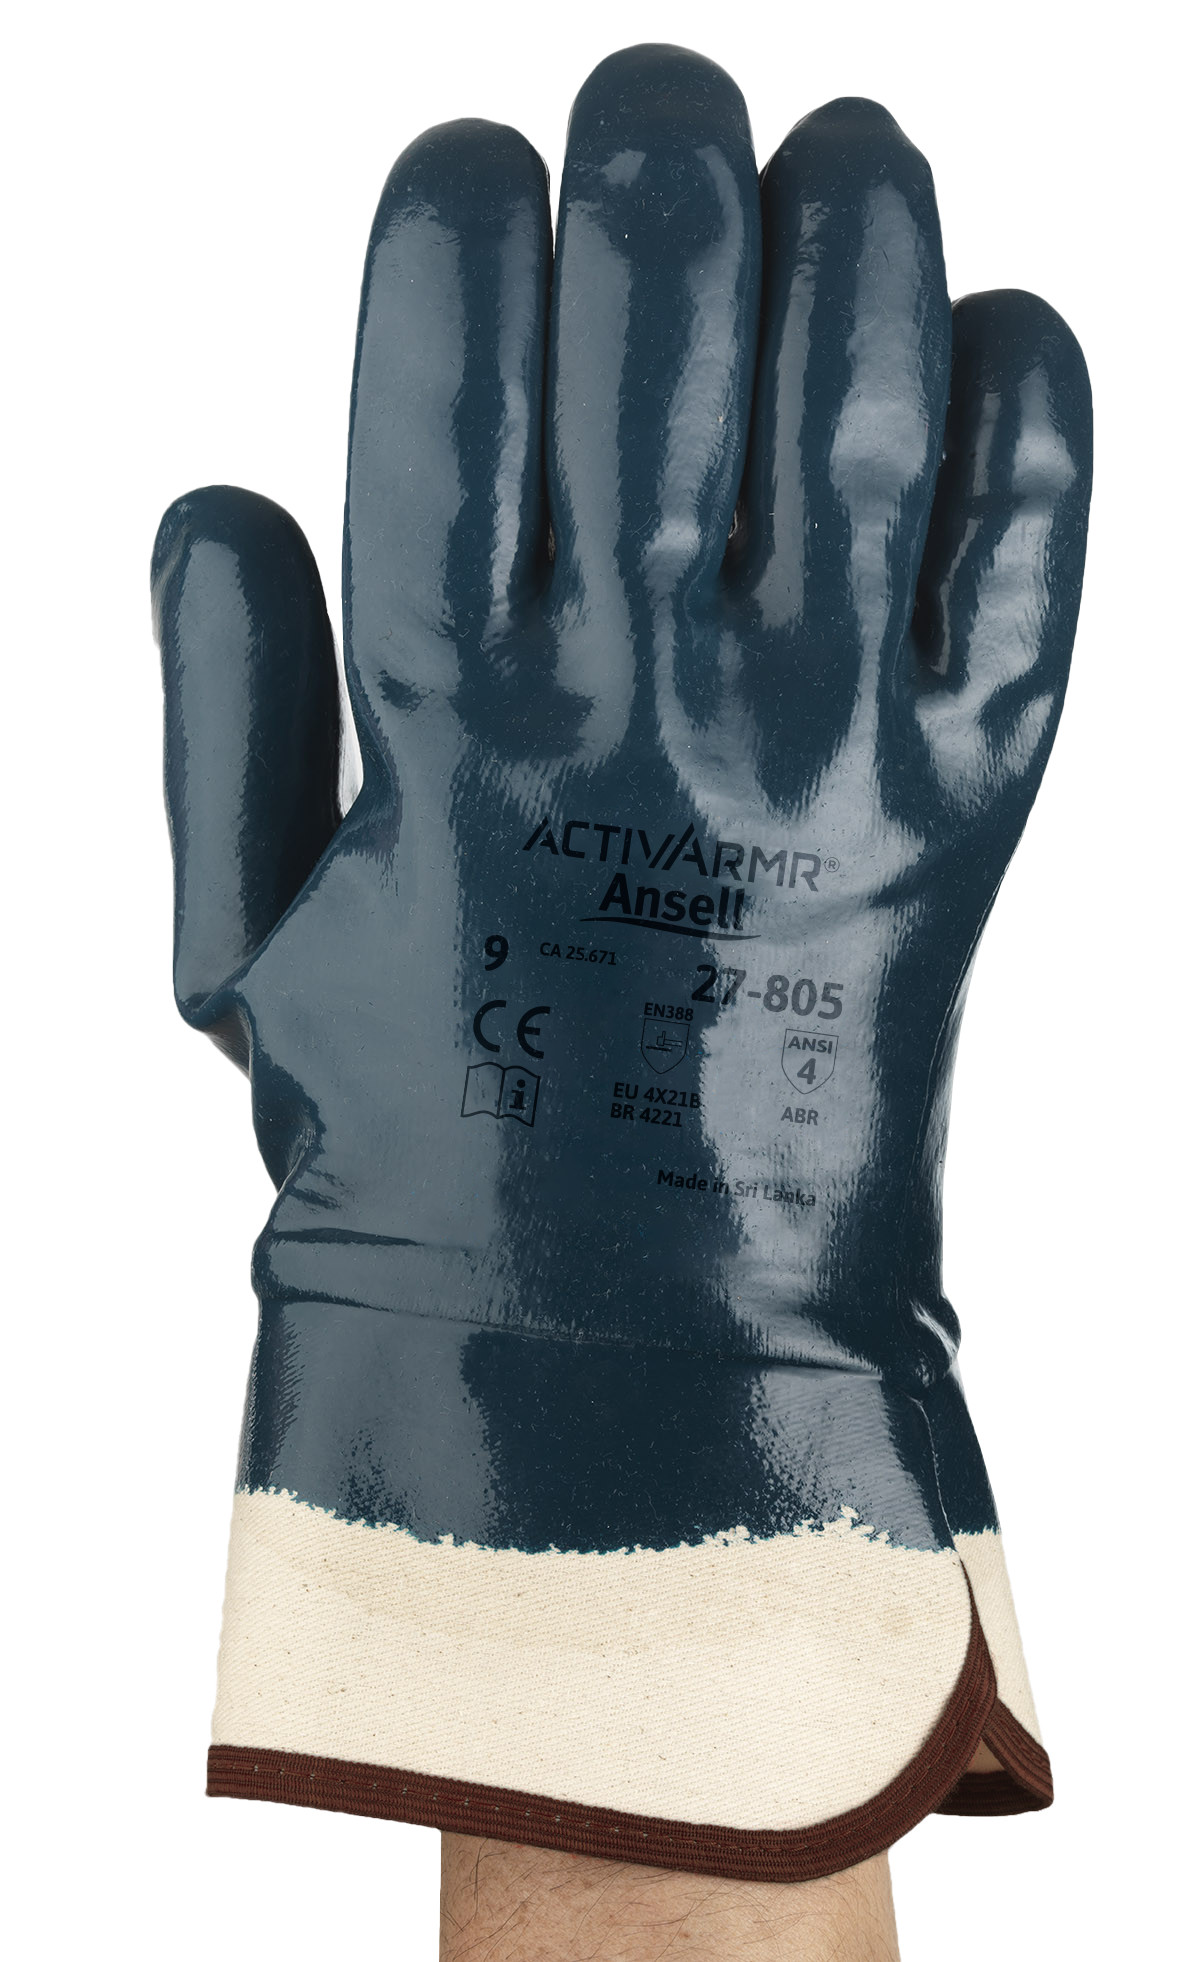 Ansell - Handschuh ActivArmr Hycron 27-805